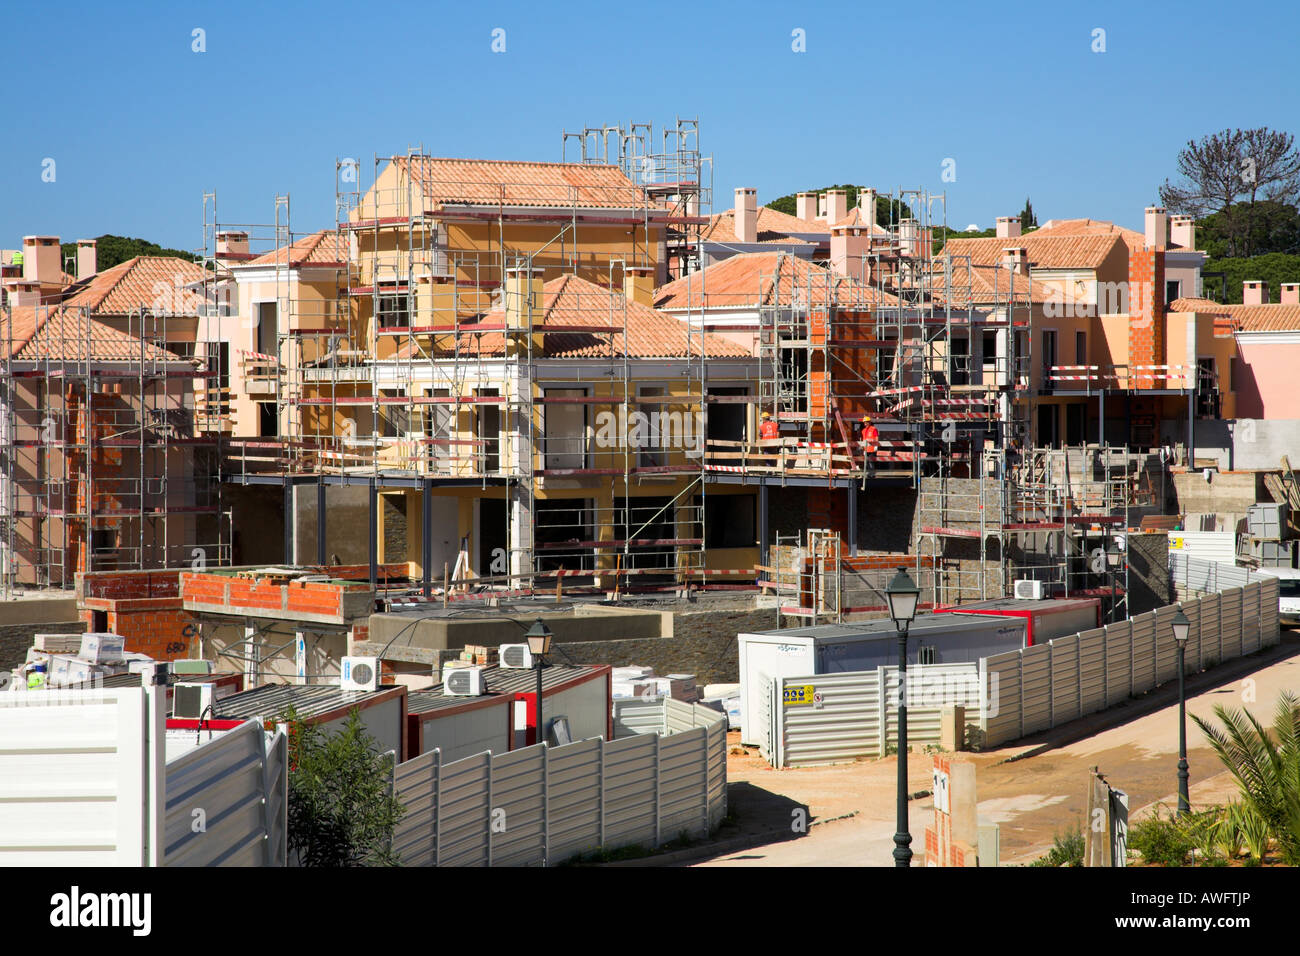 Site de construction de nouveaux immeubles d'appartements situé dans le soleil de la Méditerranée Banque D'Images